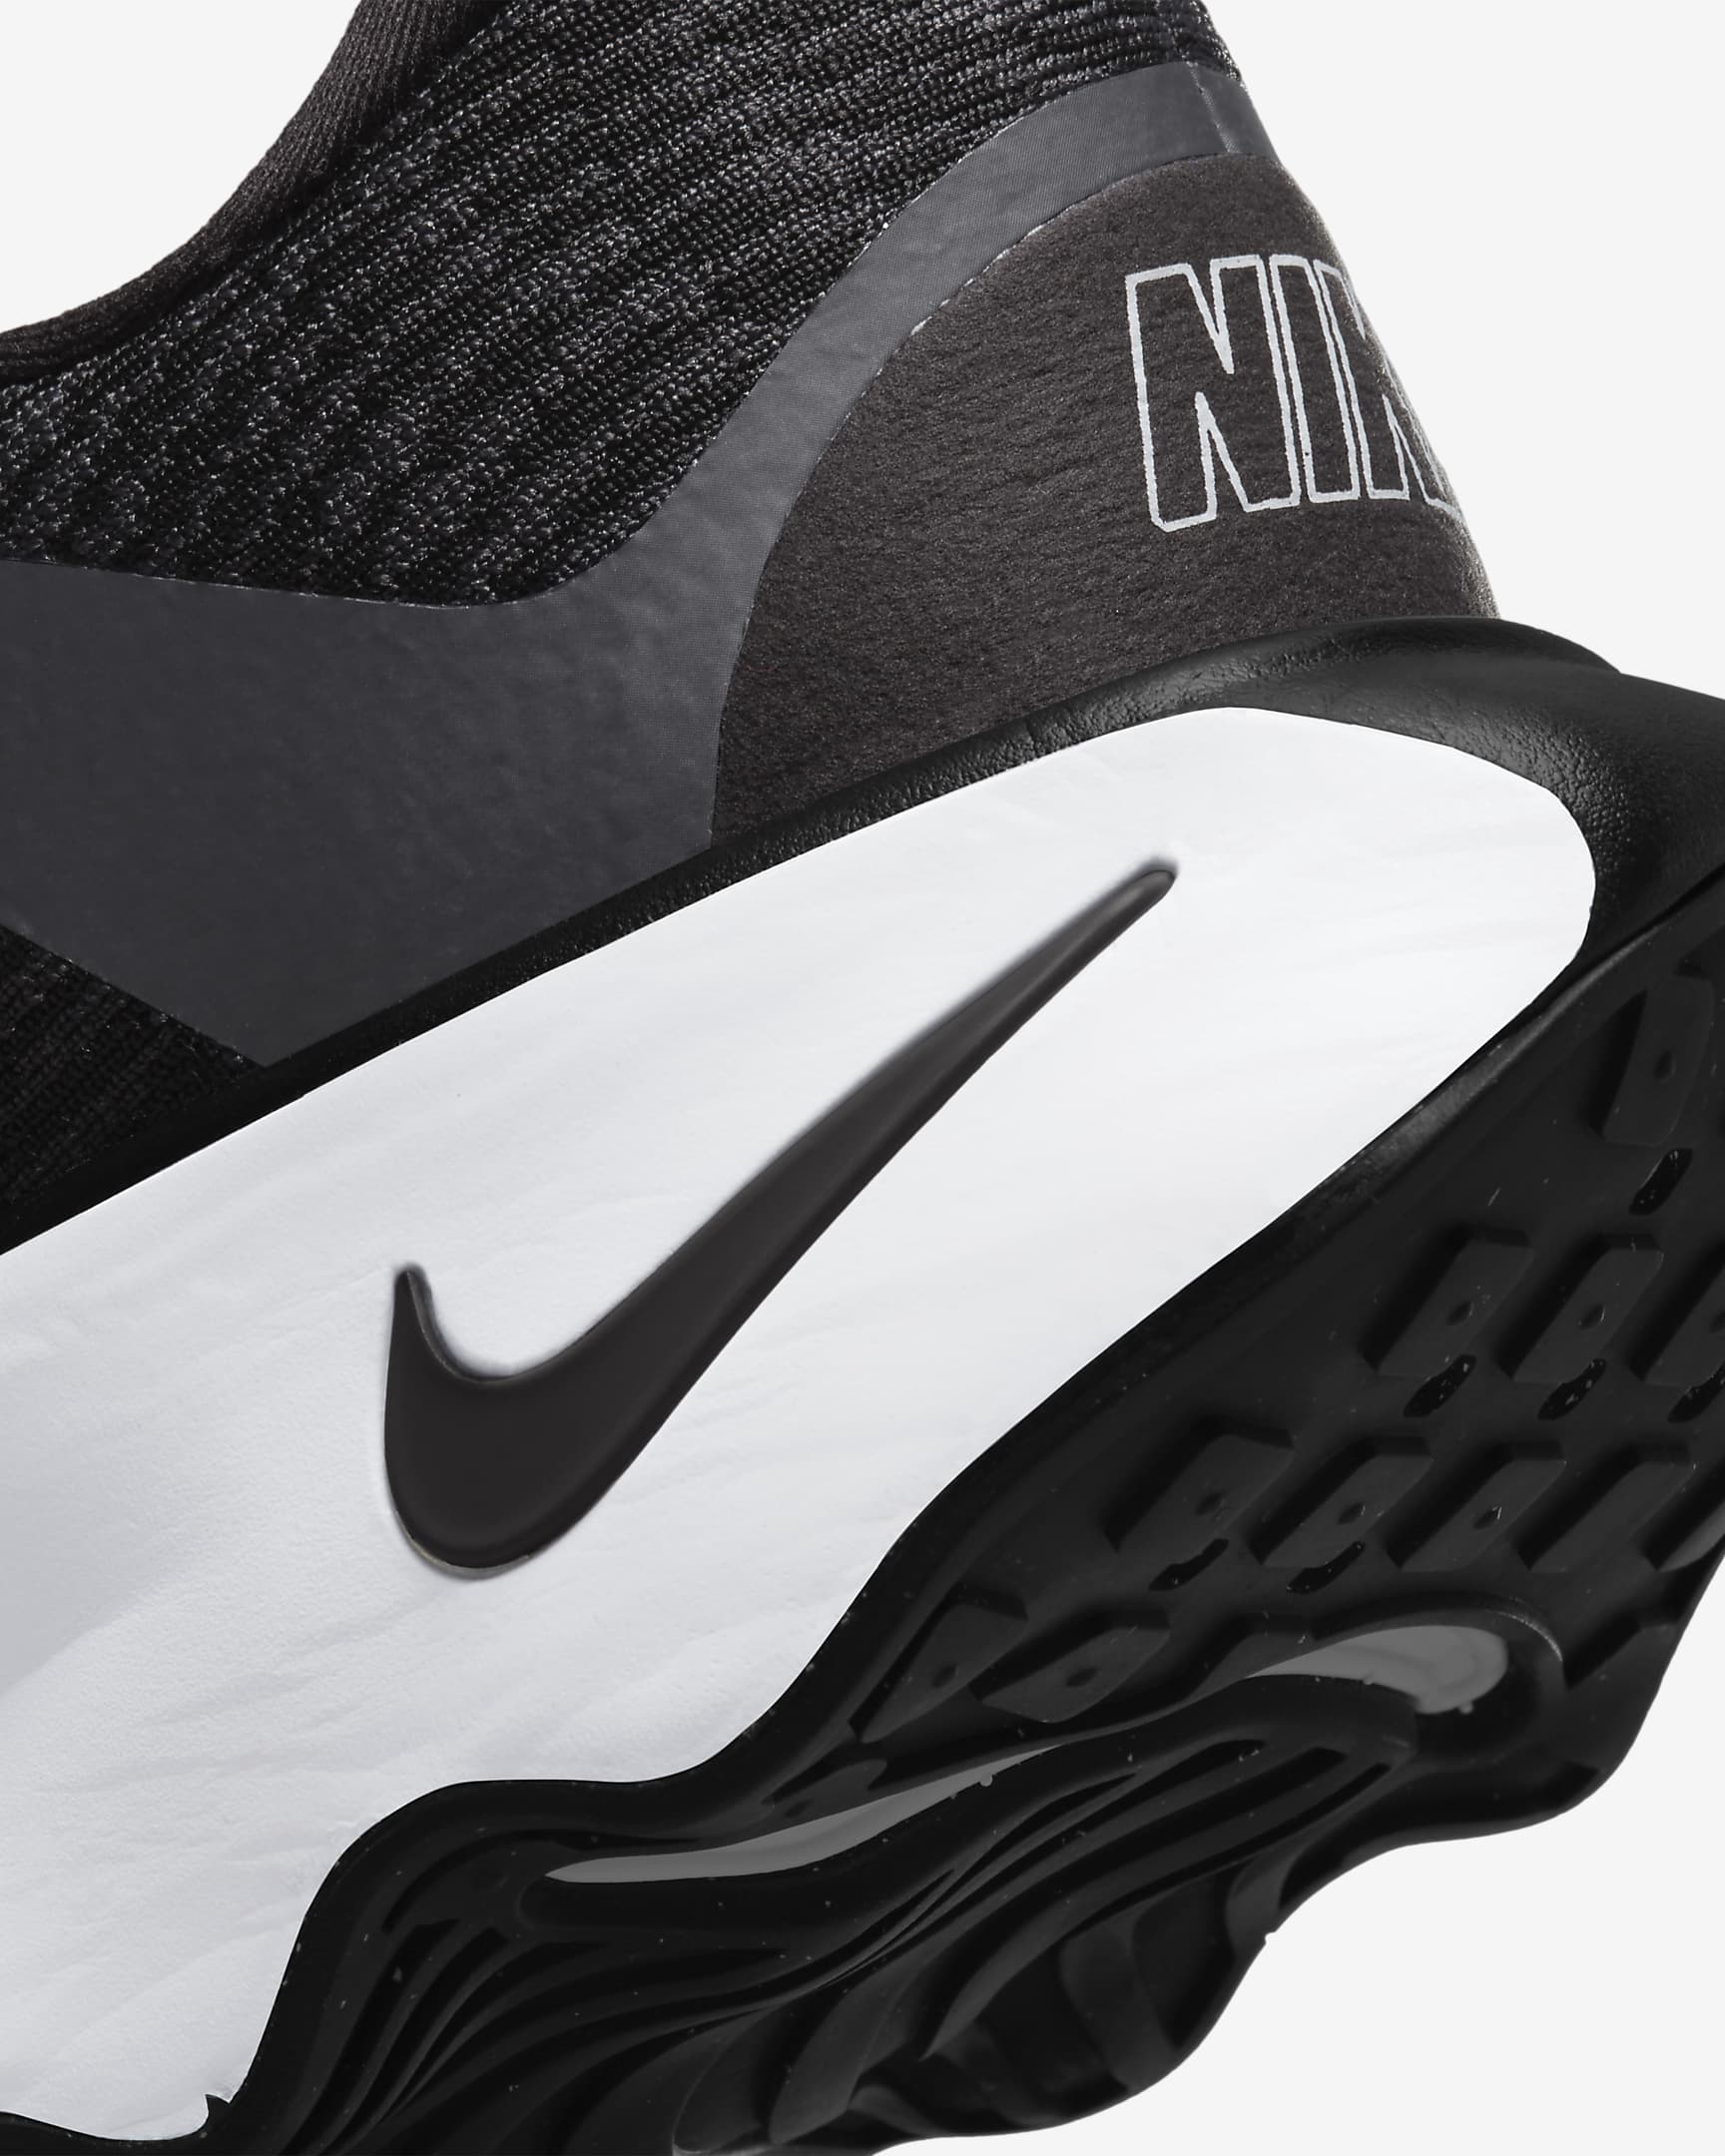 Chaussure de marche Nike Motiva pour homme - Noir/Anthracite/Blanc/Noir